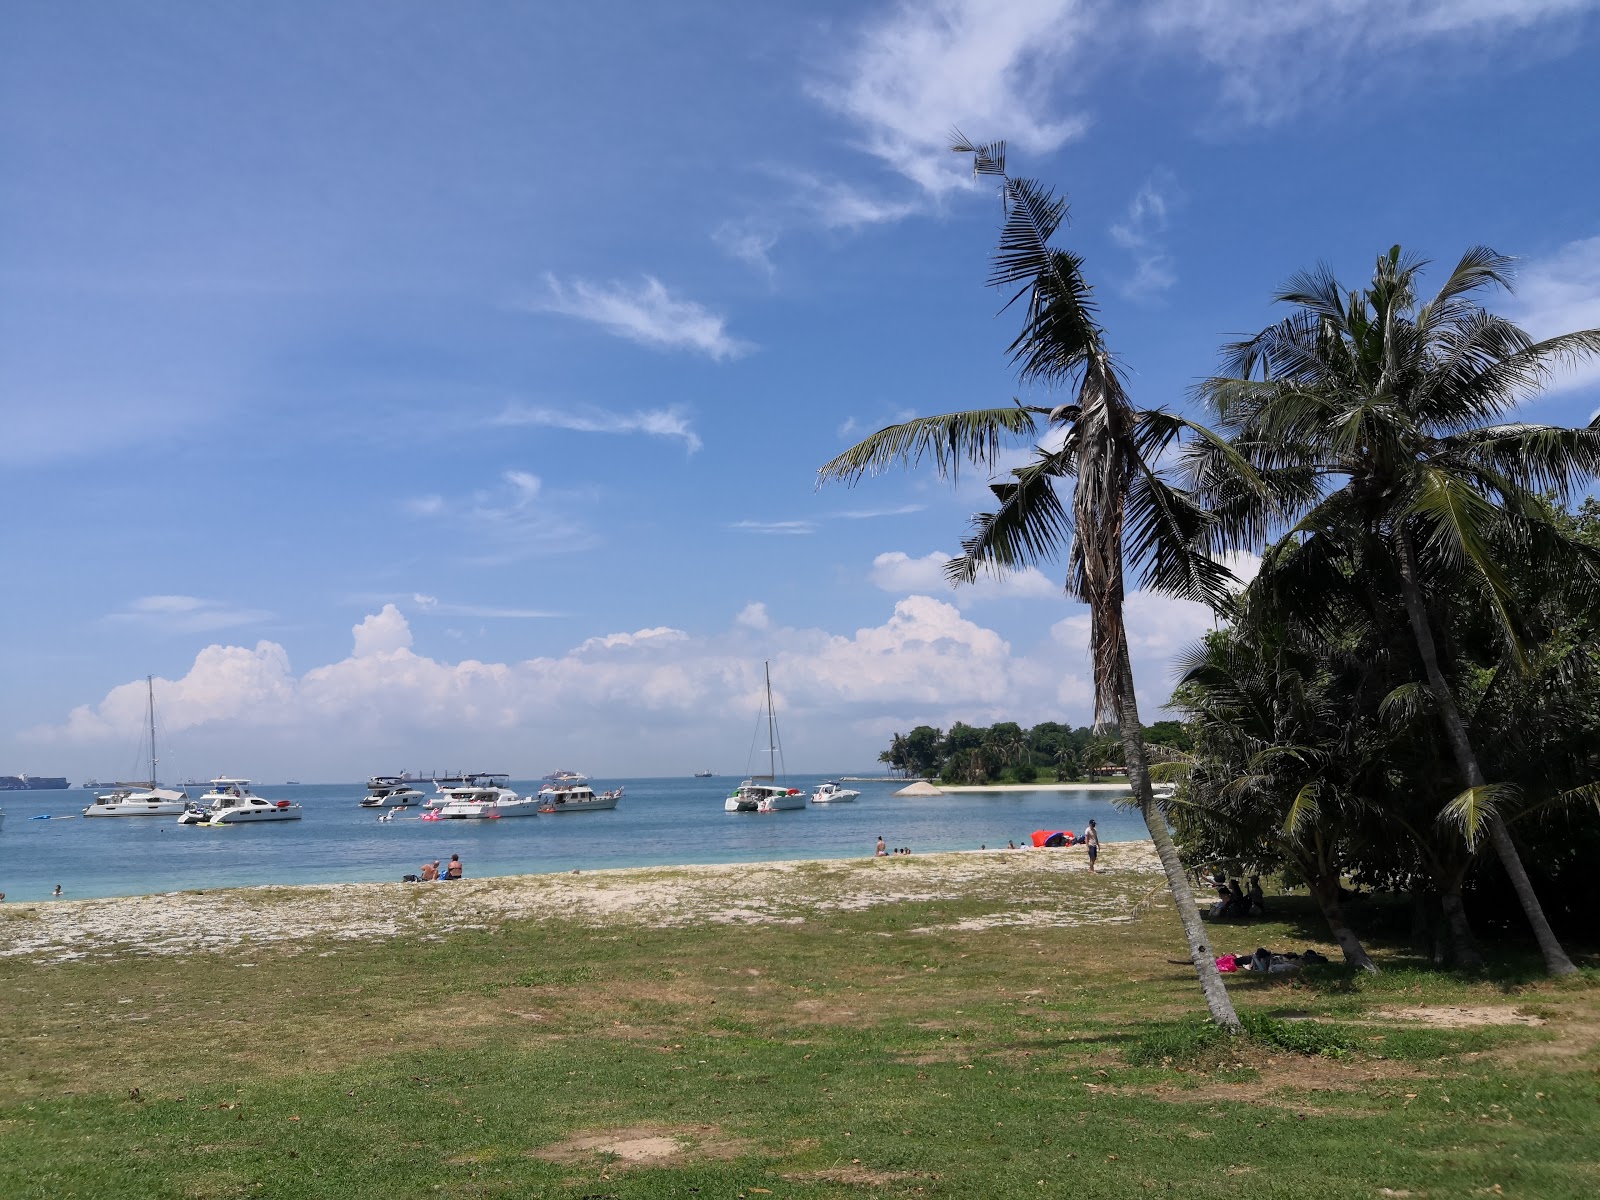 Photo de Lazarus Island Beach - endroit populaire parmi les connaisseurs de la détente